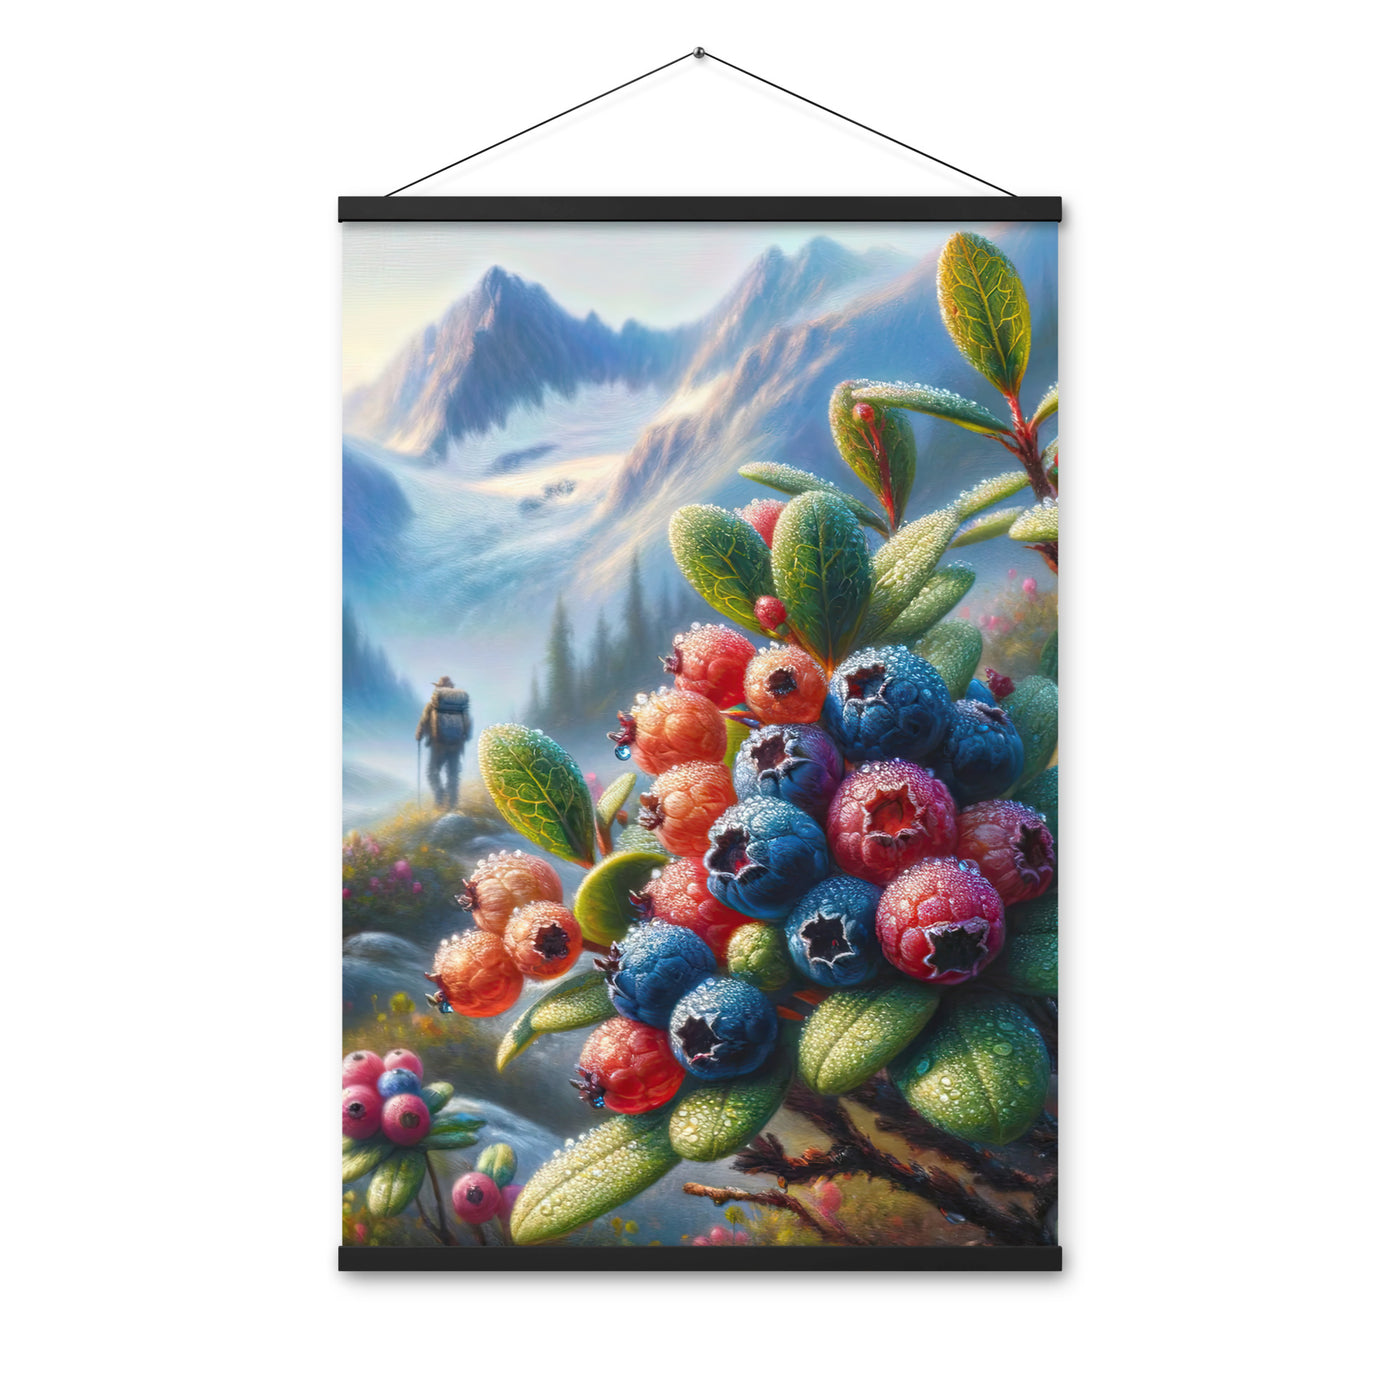 Ölgemälde einer Nahaufnahme von Alpenbeeren in satten Farben und zarten Texturen - Premium Poster mit Aufhängung wandern xxx yyy zzz 61 x 91.4 cm